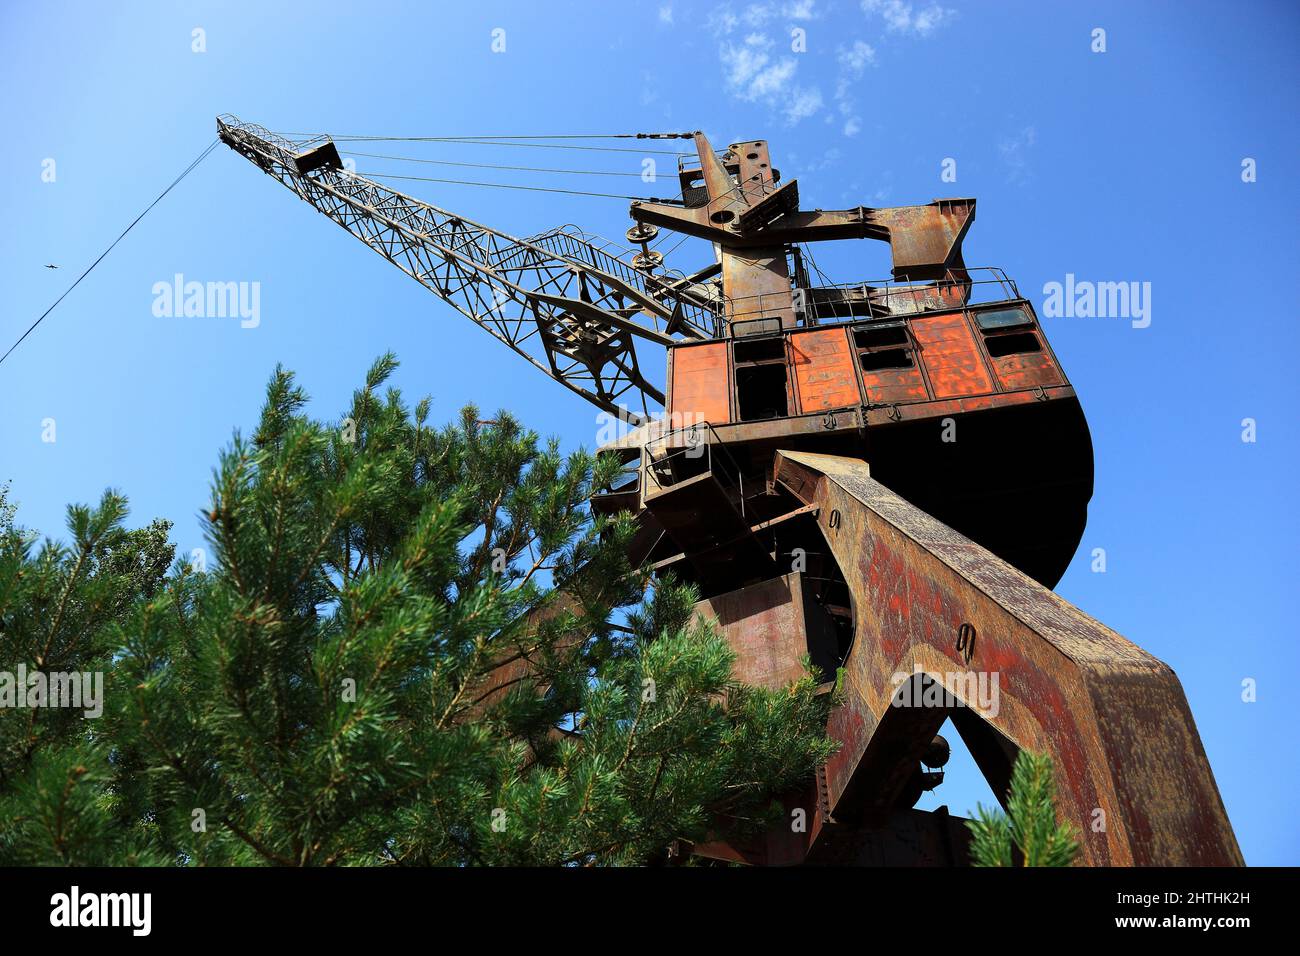 Ukraine, Sperrzone, Pripjat, in der unbewohnbaren 30-Kilometer-Zone um das Kraftwerk von Tschernobyl und der Arbeitersiedlung Pripjat, Kran am Schiffs Stock Photo